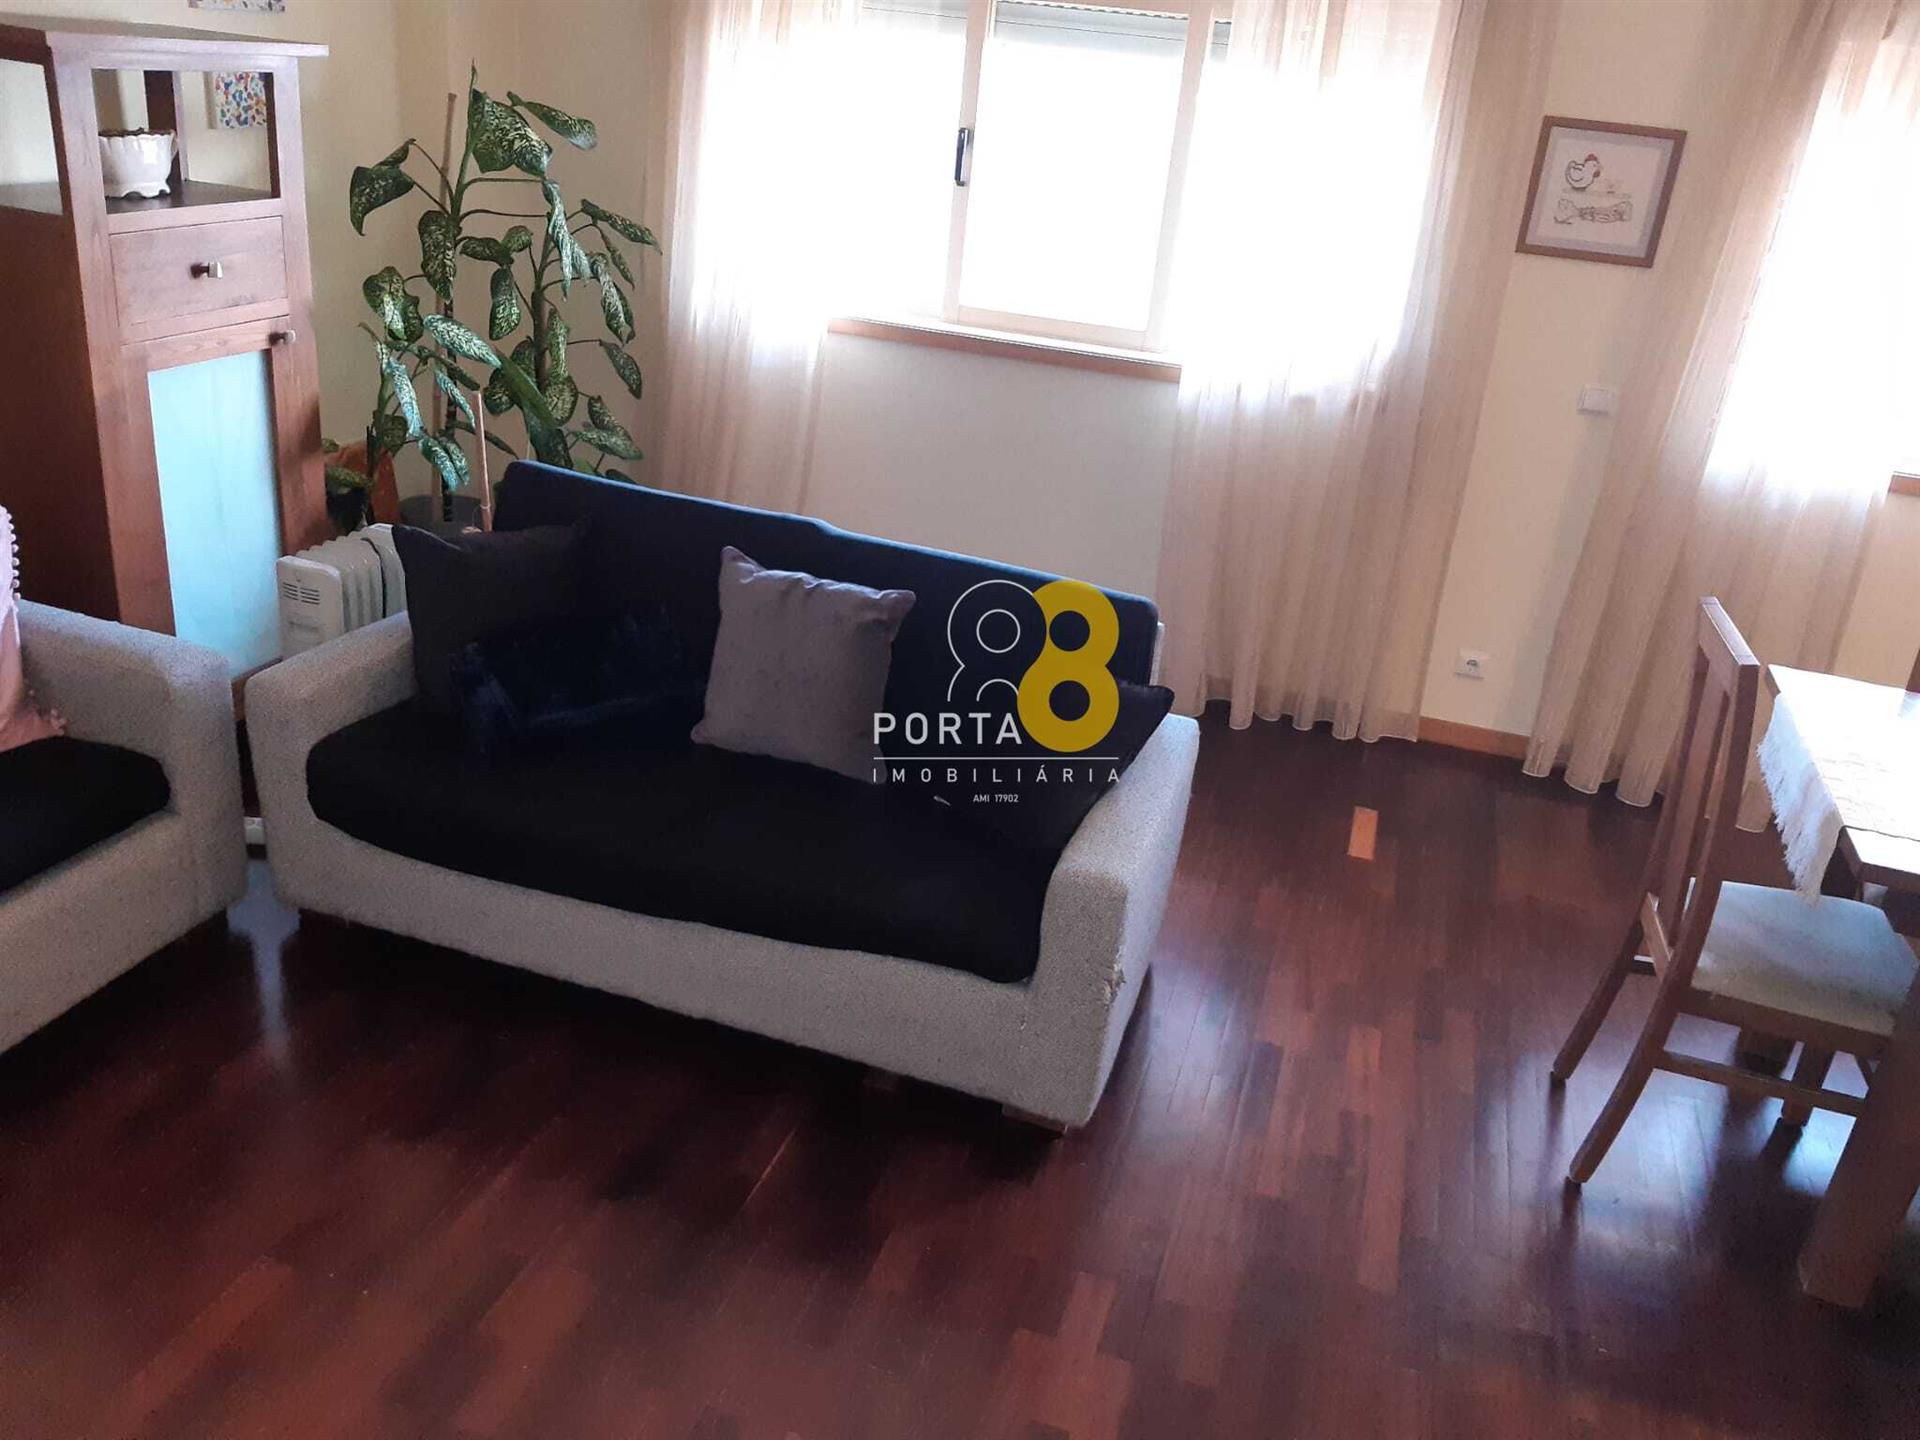 3 slaapkamer appartement in Matosinhos Sul met panoramisch en onveranderlijk uitzicht naast de metro